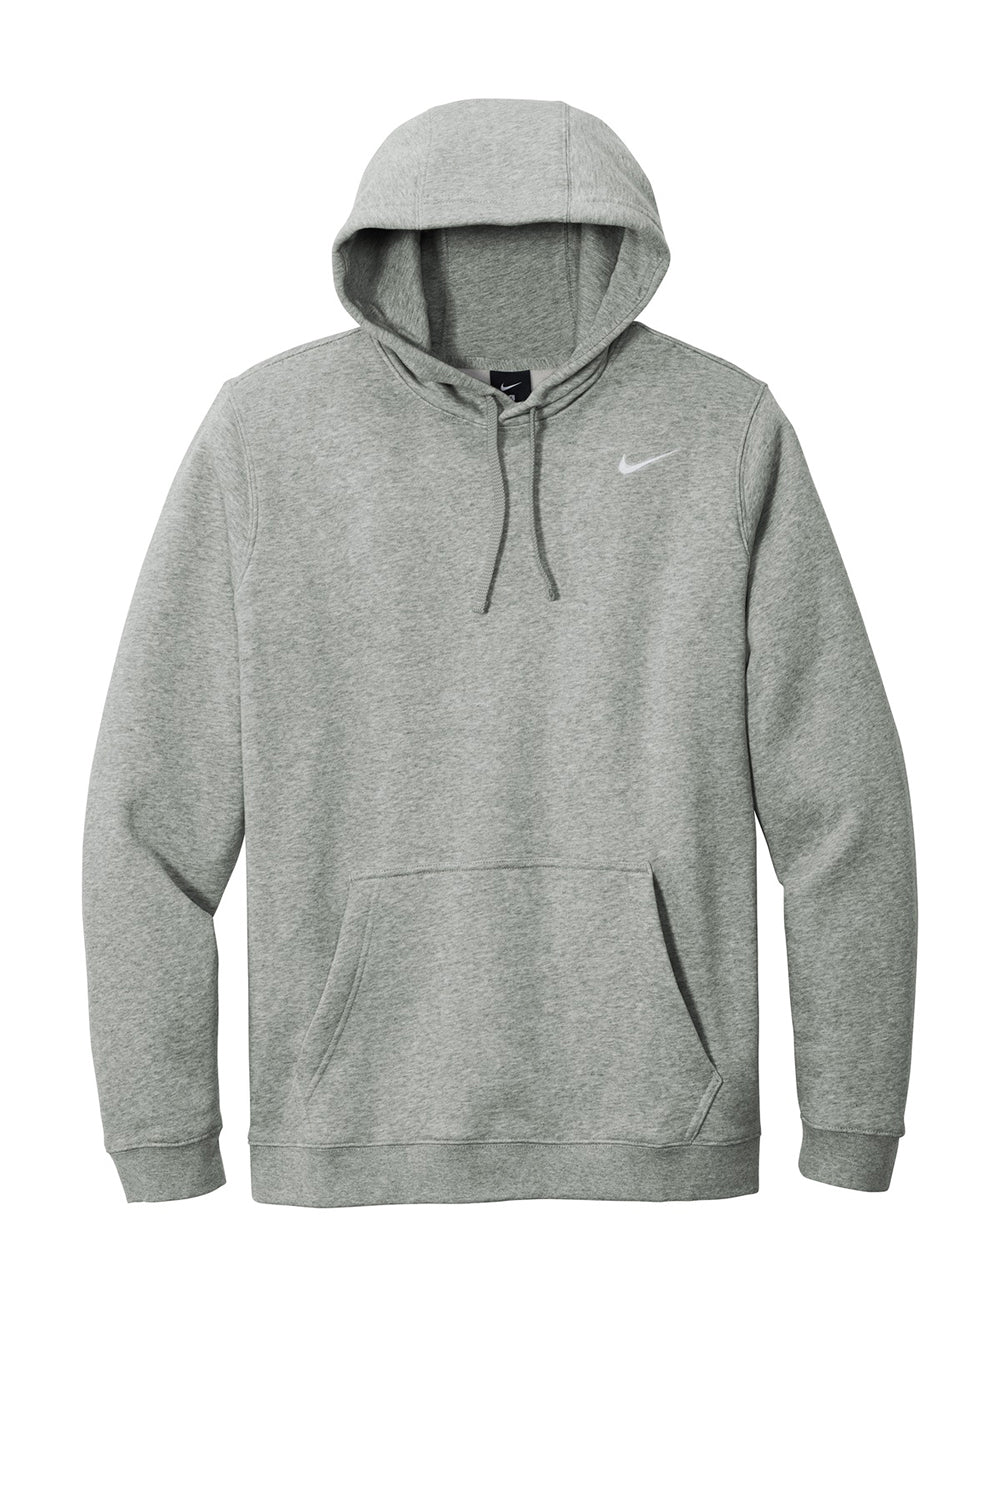 Nike CJ1611 Mens Club Fleece Hooded Sweatshirt Hoodie Heather Dark Grey Flat Front